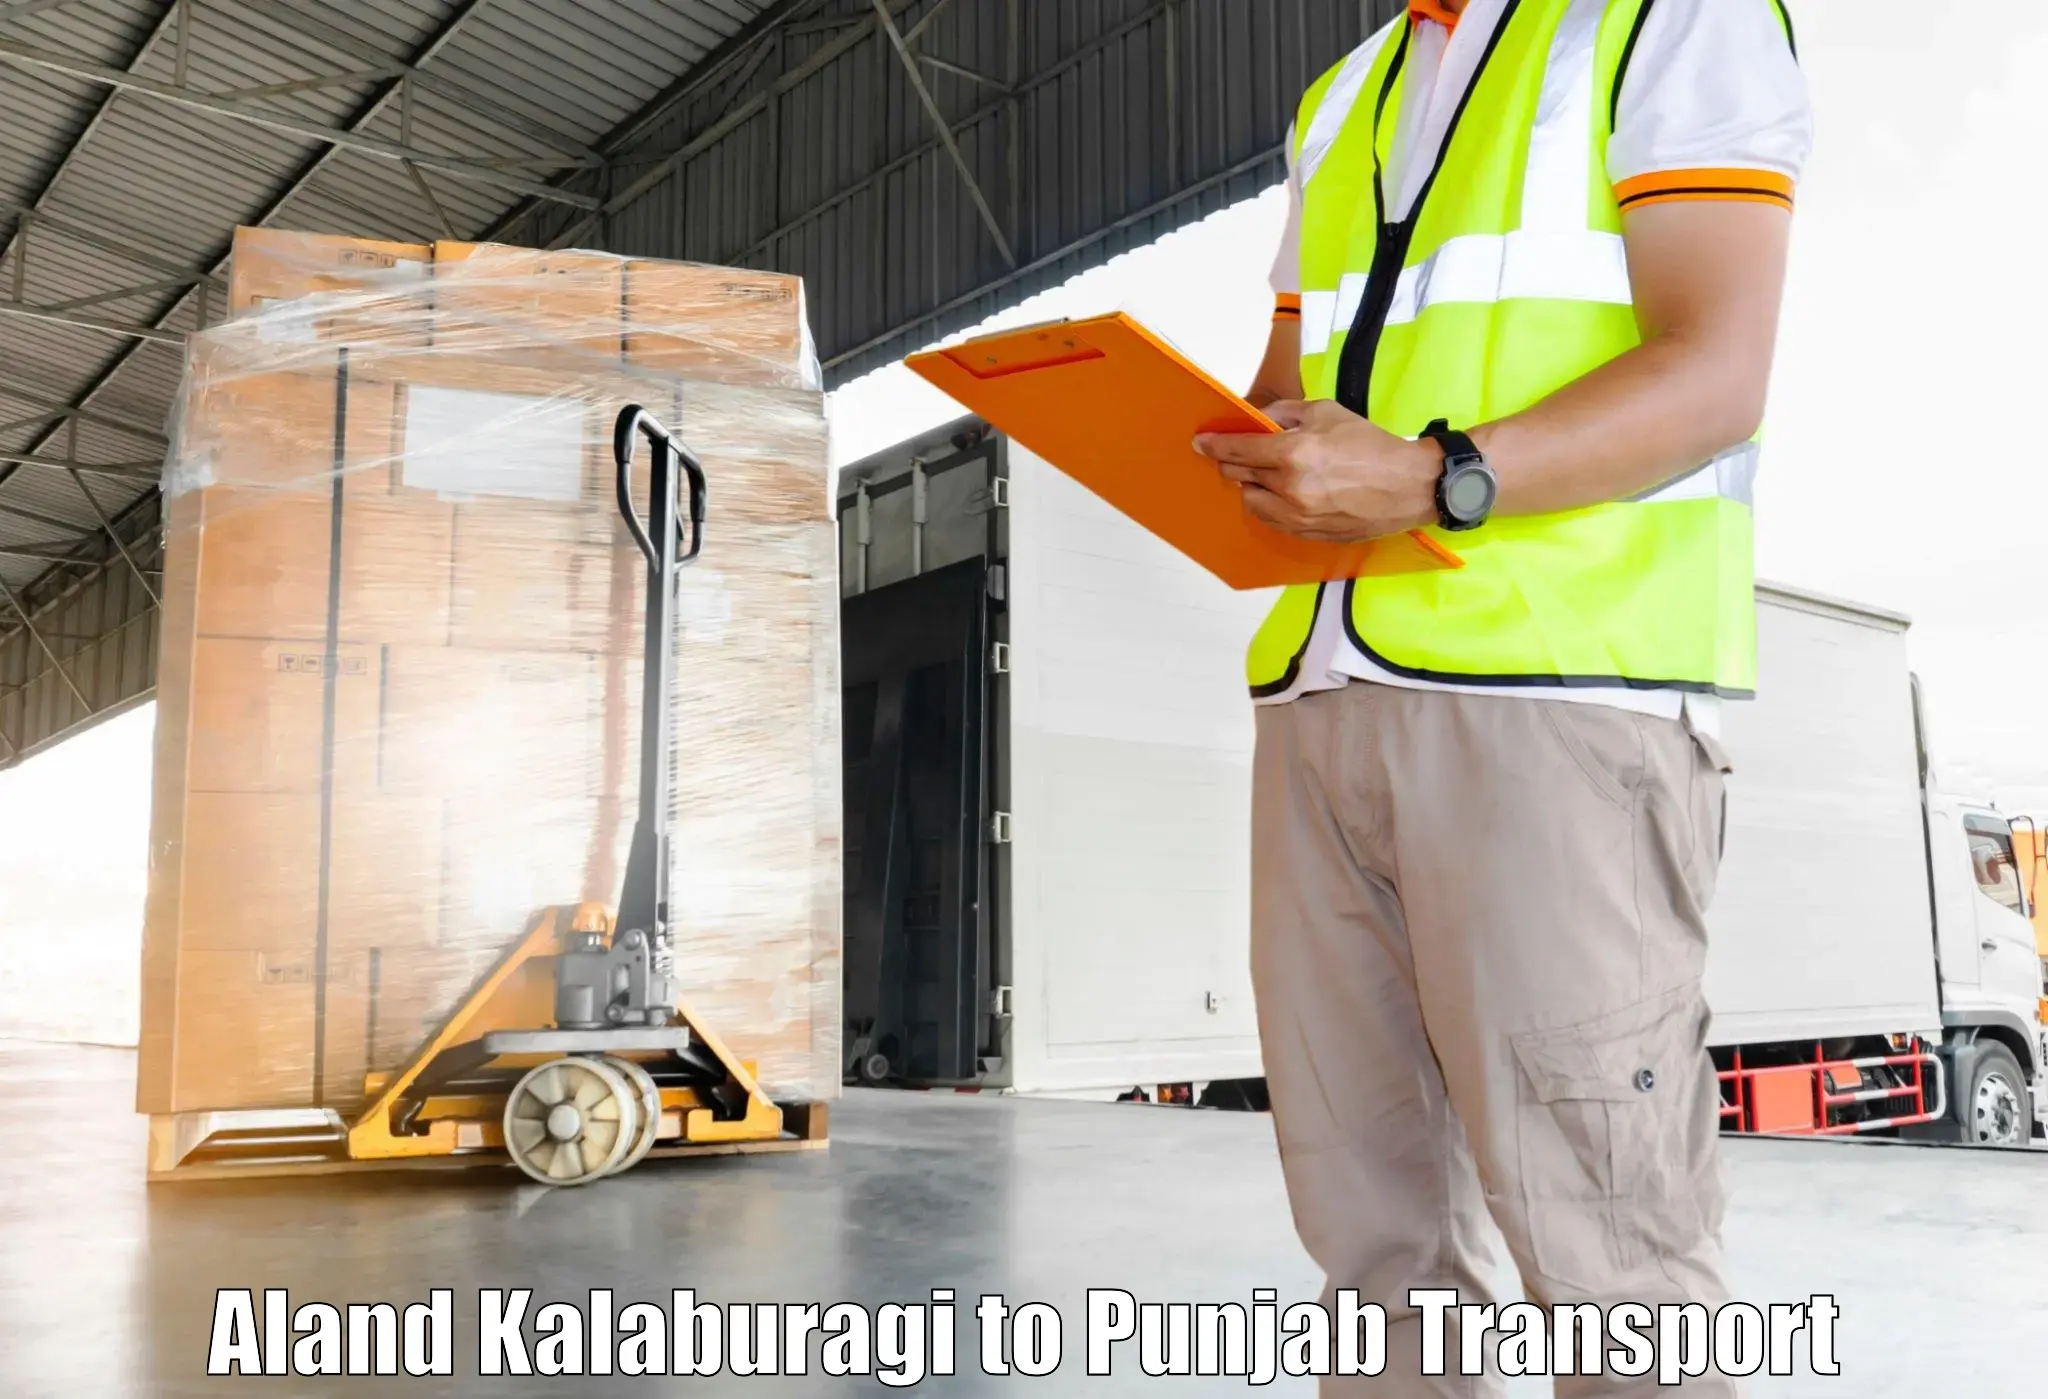 Container transport service Aland Kalaburagi to Punjab